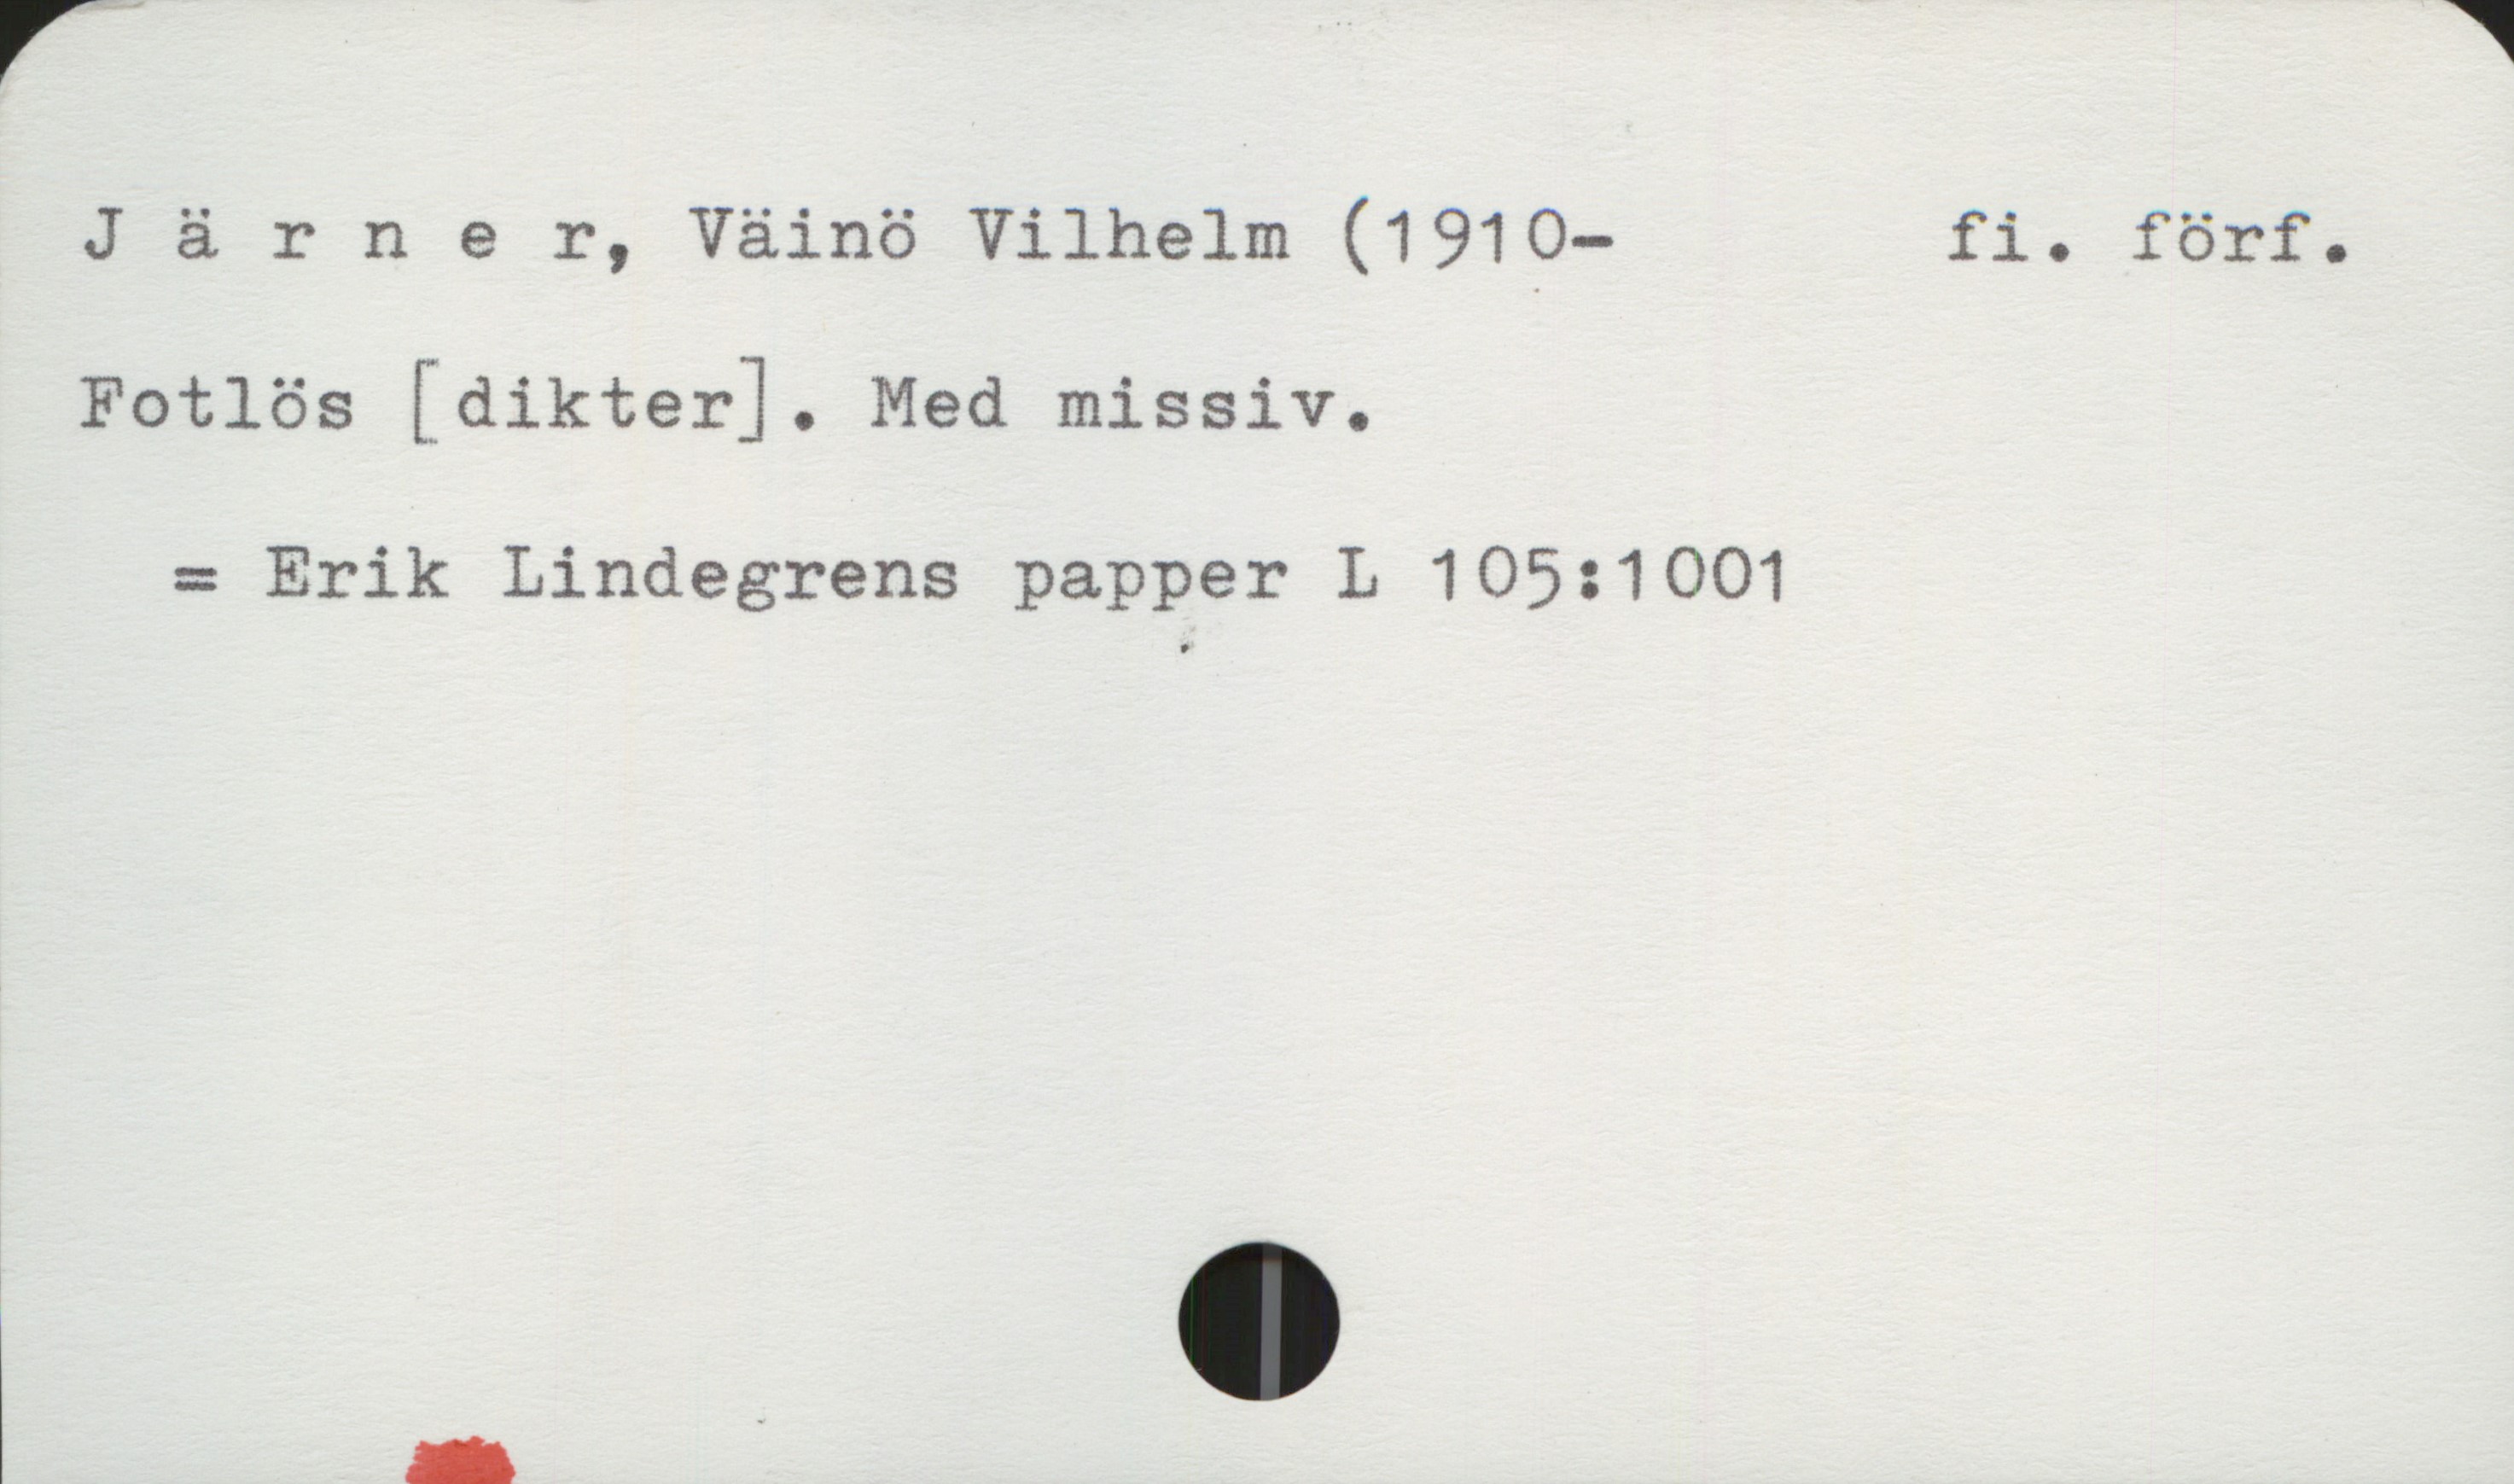 Järner, Väinö Vilhelm (1910-1997) Järner, Väinö Vilhelm (1910-)  fi. förf.

Fotlös [dikter]. Med missiv.

   = Erik Lindegrens papper L 105:1001